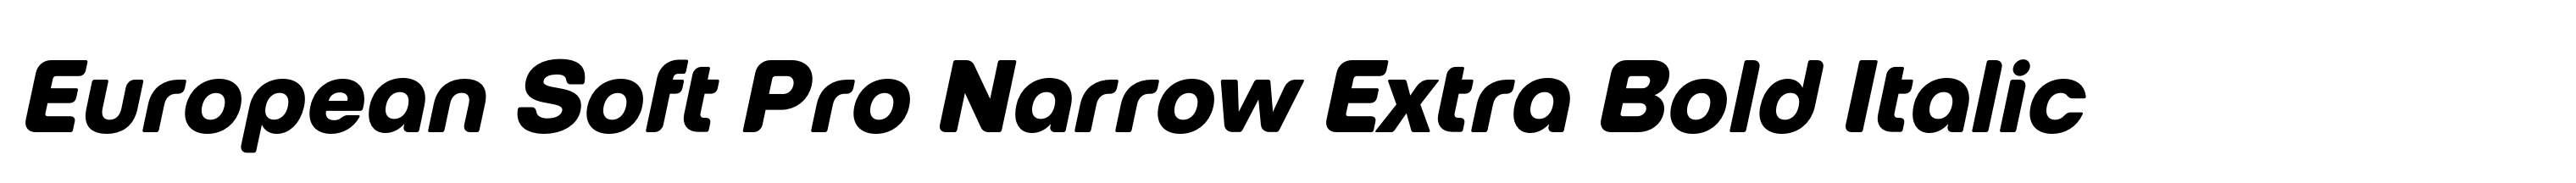 European Soft Pro Narrow Extra Bold Italic